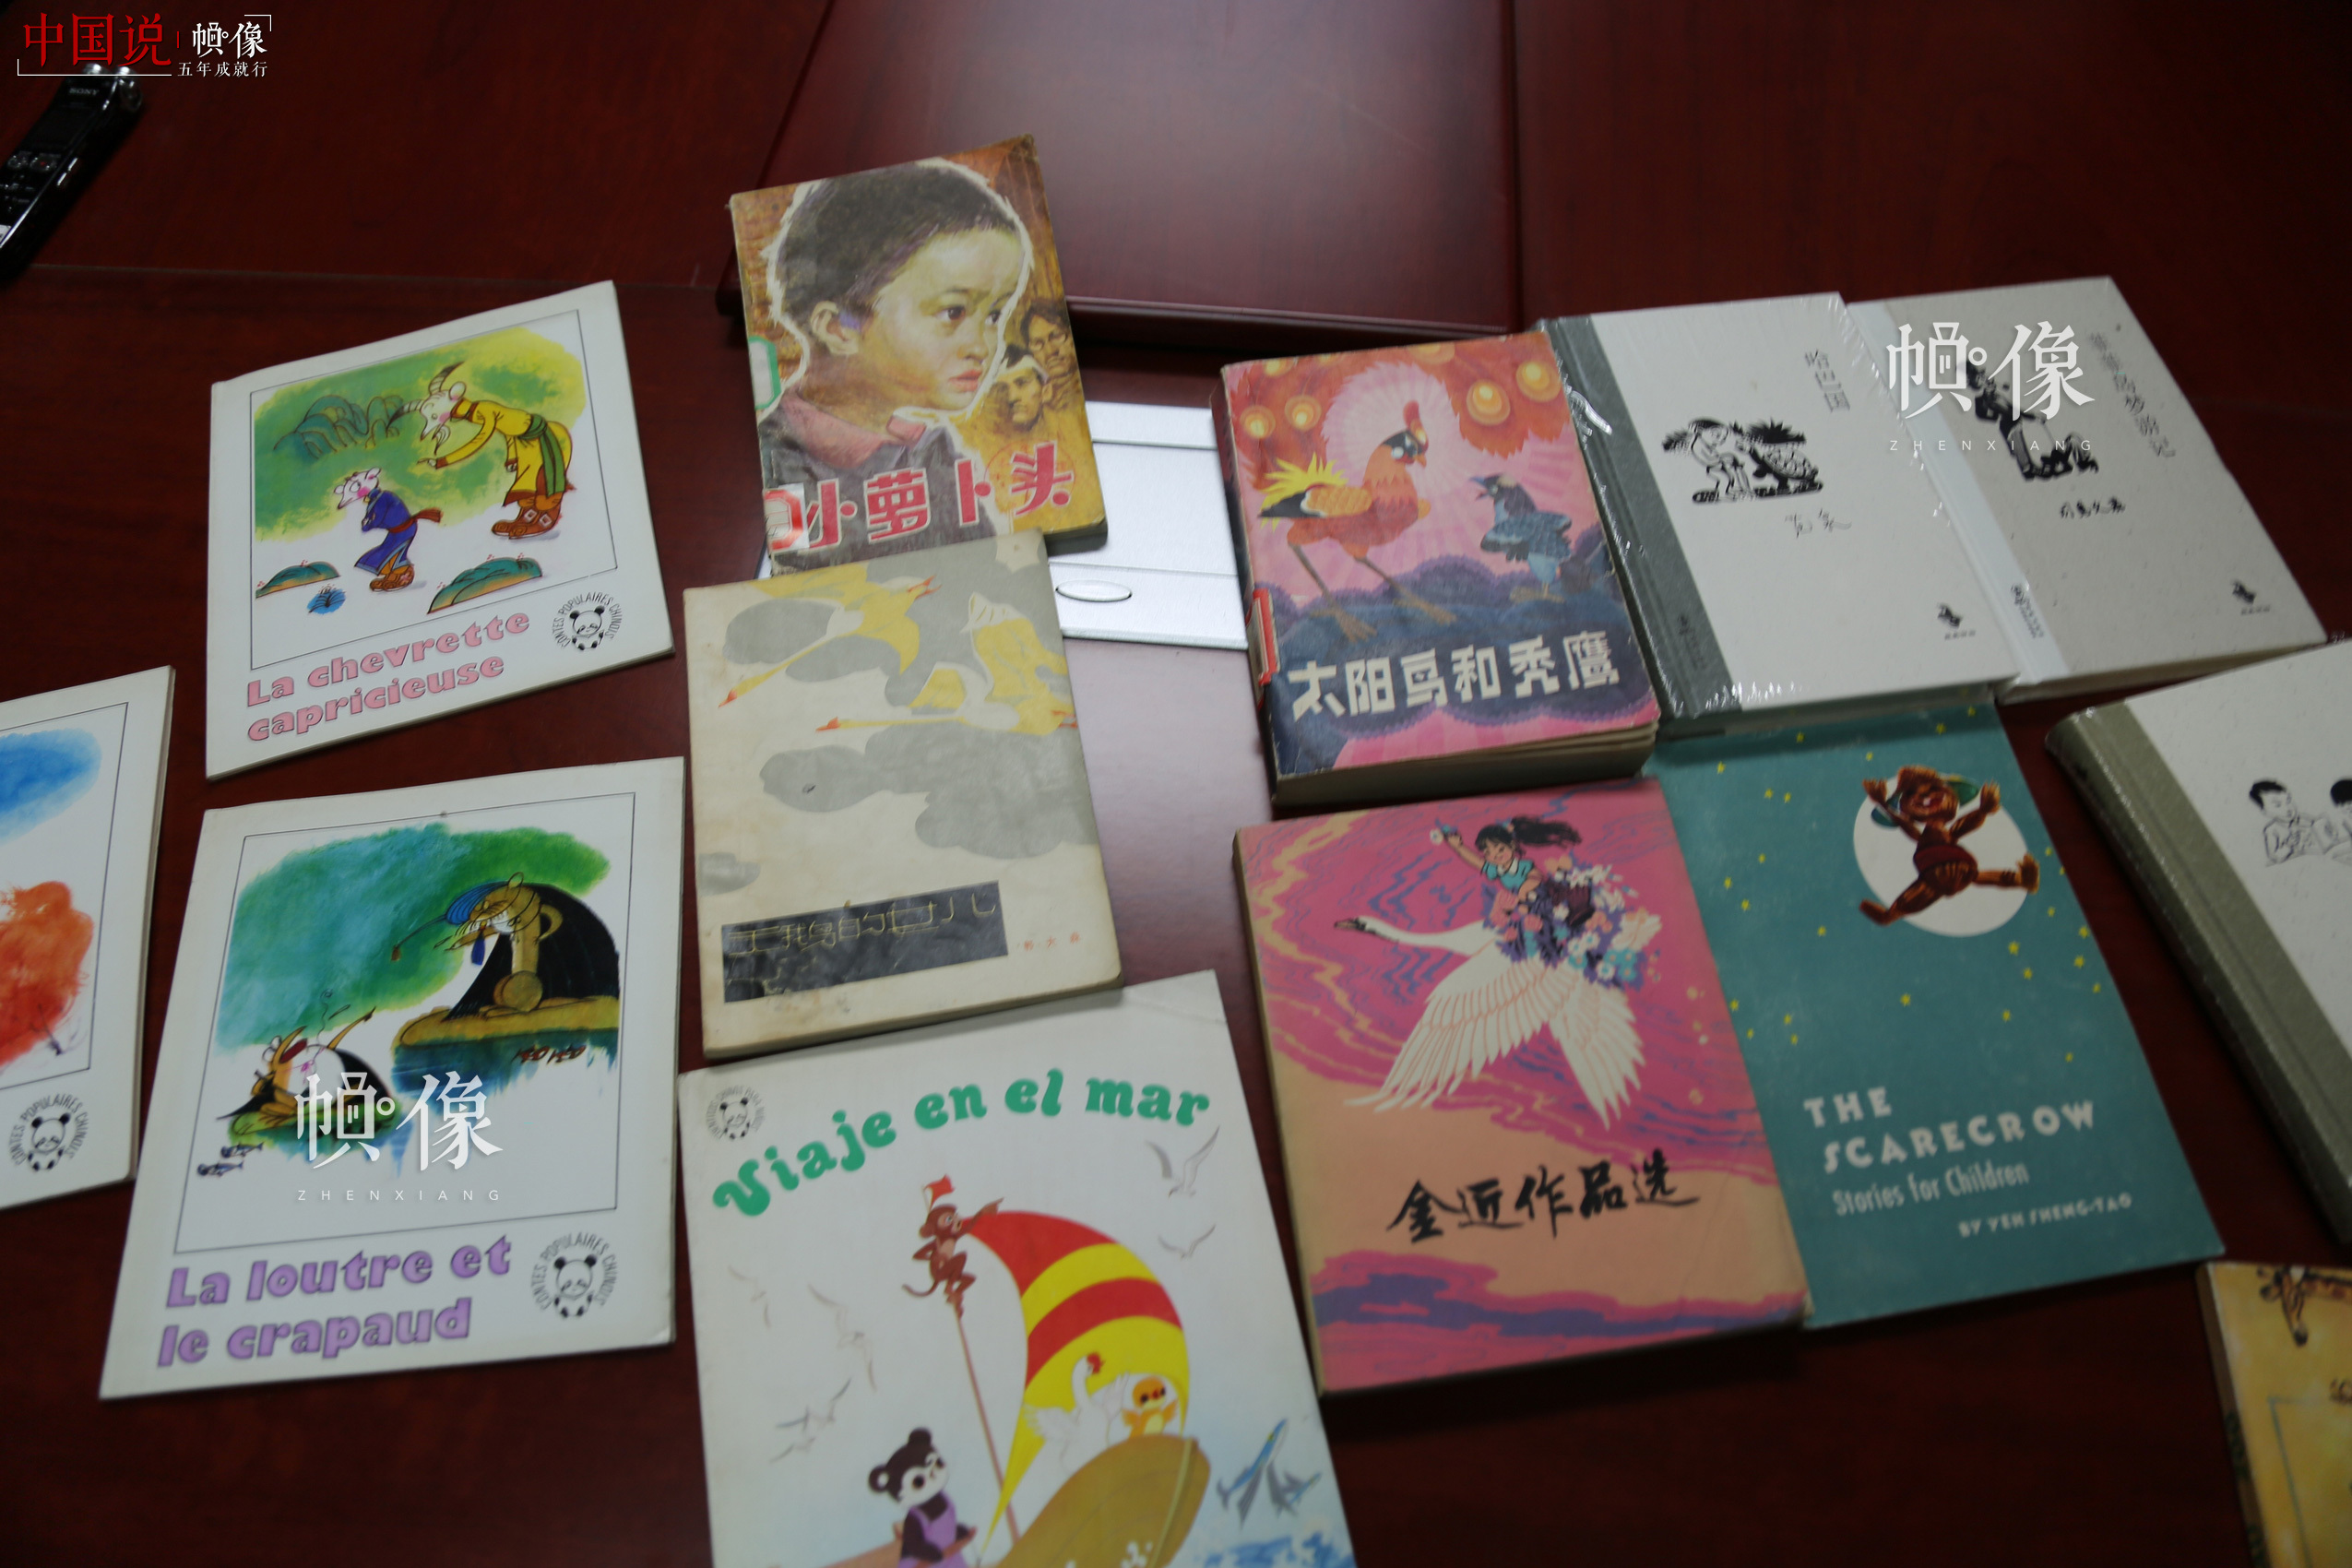 图为海豚出版社出版的一些图书。 中国网记者 赵超 摄